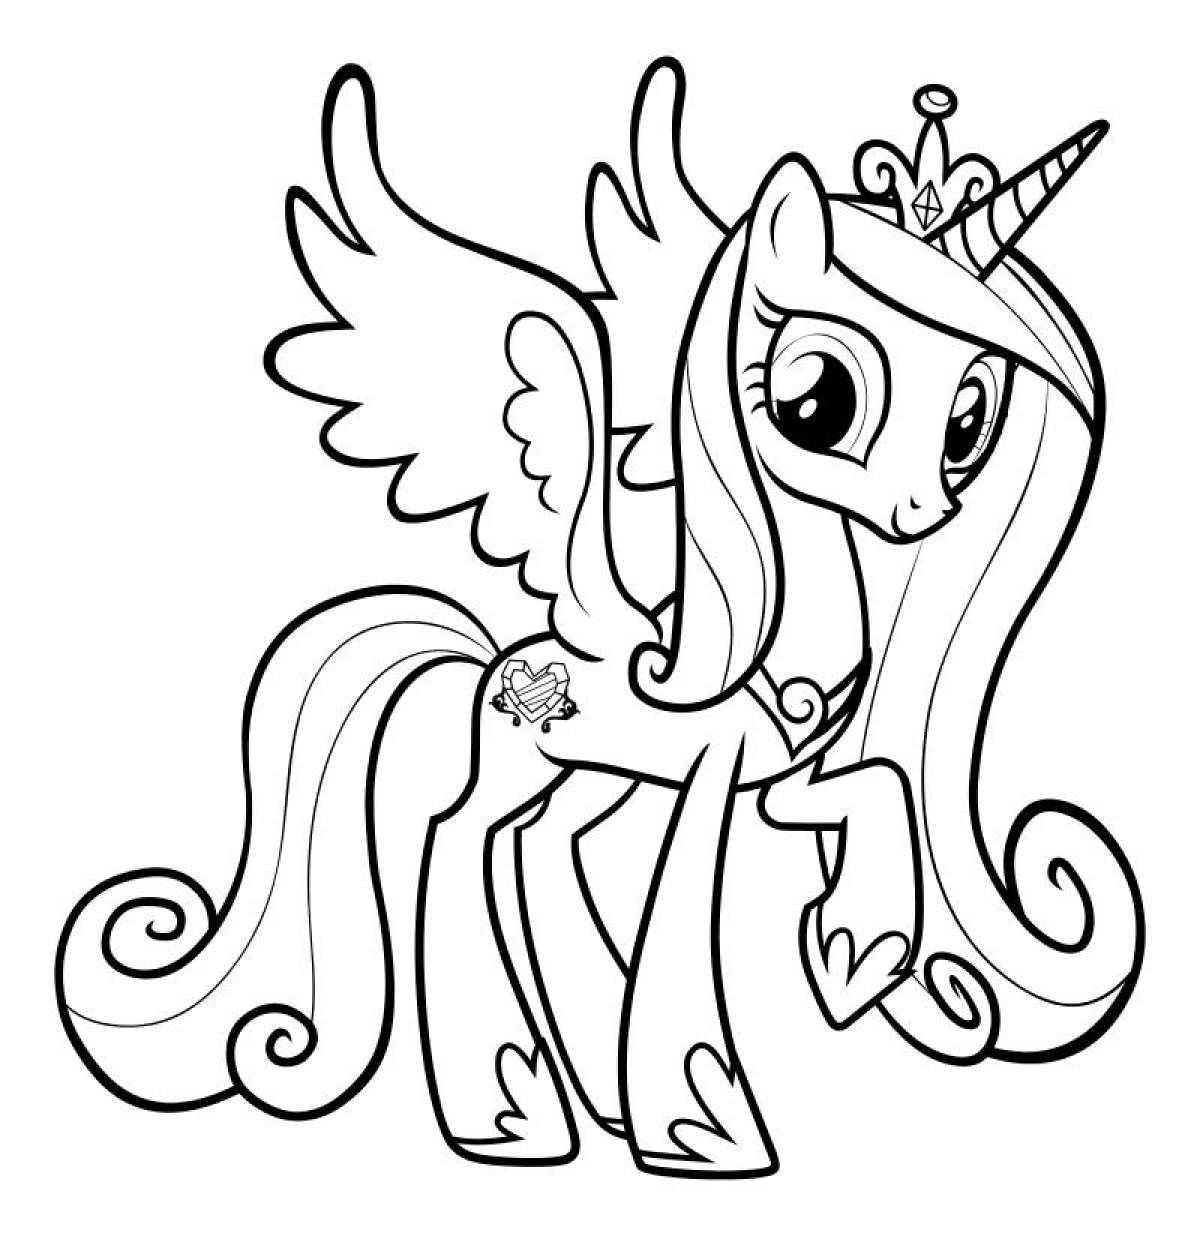 Краткое описание мультсериала Май литл пони | Мy little pony | Мои маленькие пони.